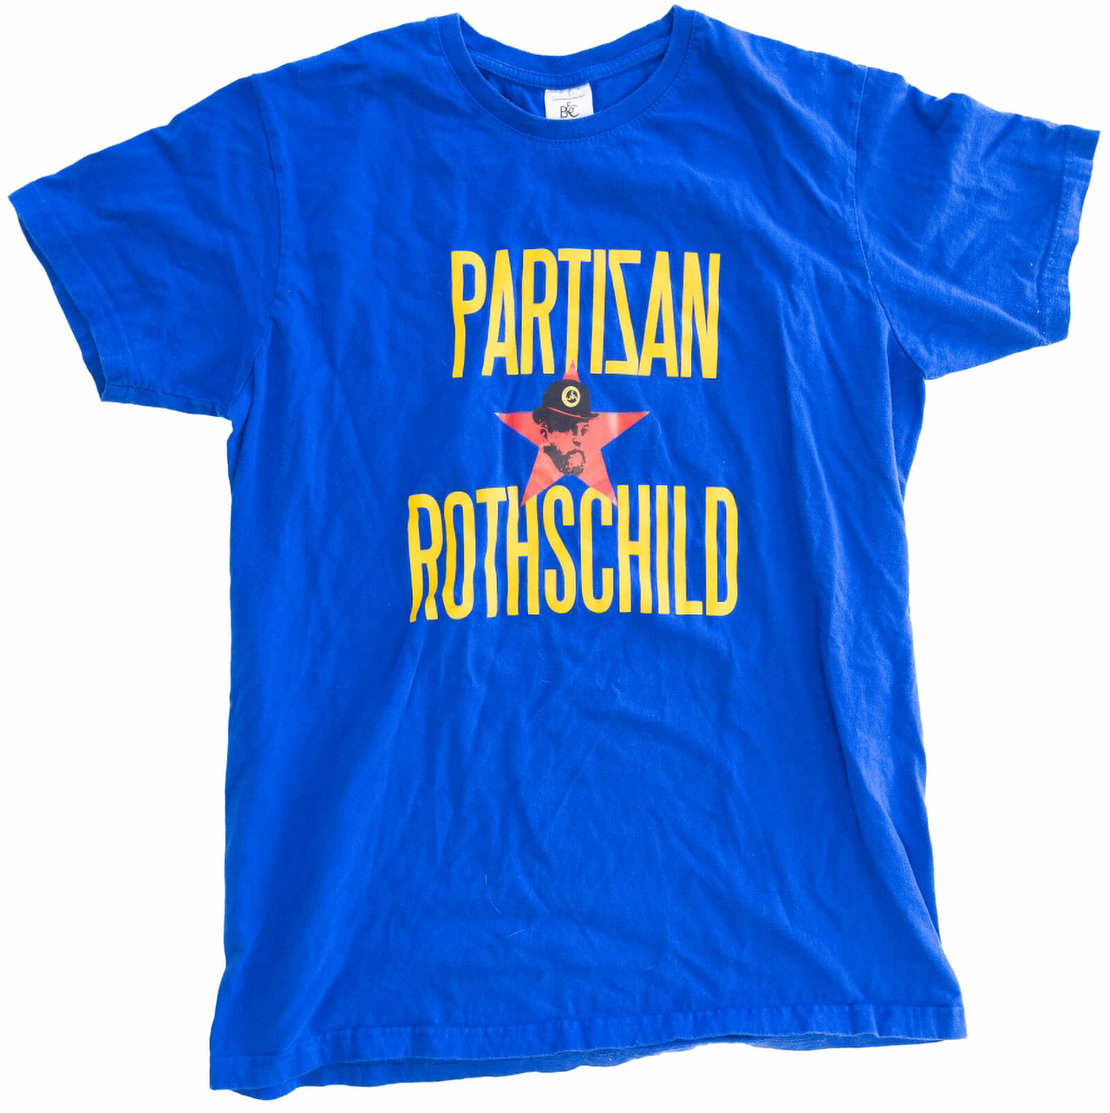 T-Shirt von „Partisan*Rothschild“ (First Vienna FC 1894), 2018, © JMW / Tobias de St. Julien 